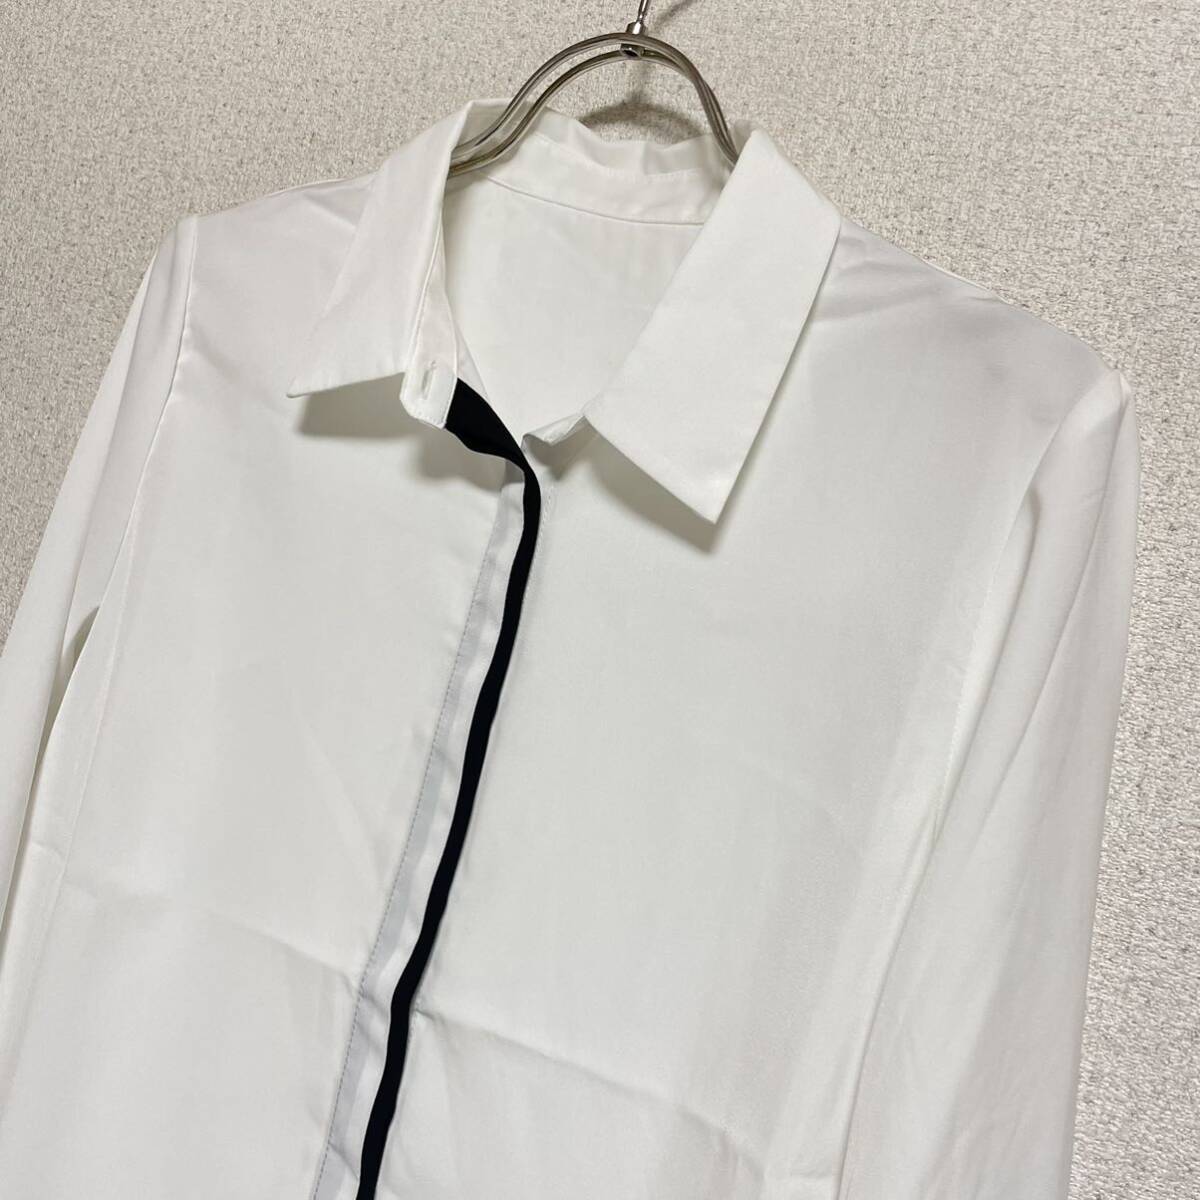 [ с биркой / обычная цена ¥13200-]Le souk Le souk обычный цвет 7 минут рукав рубашка блуза белый женский размер надпись 38 M соответствует *15